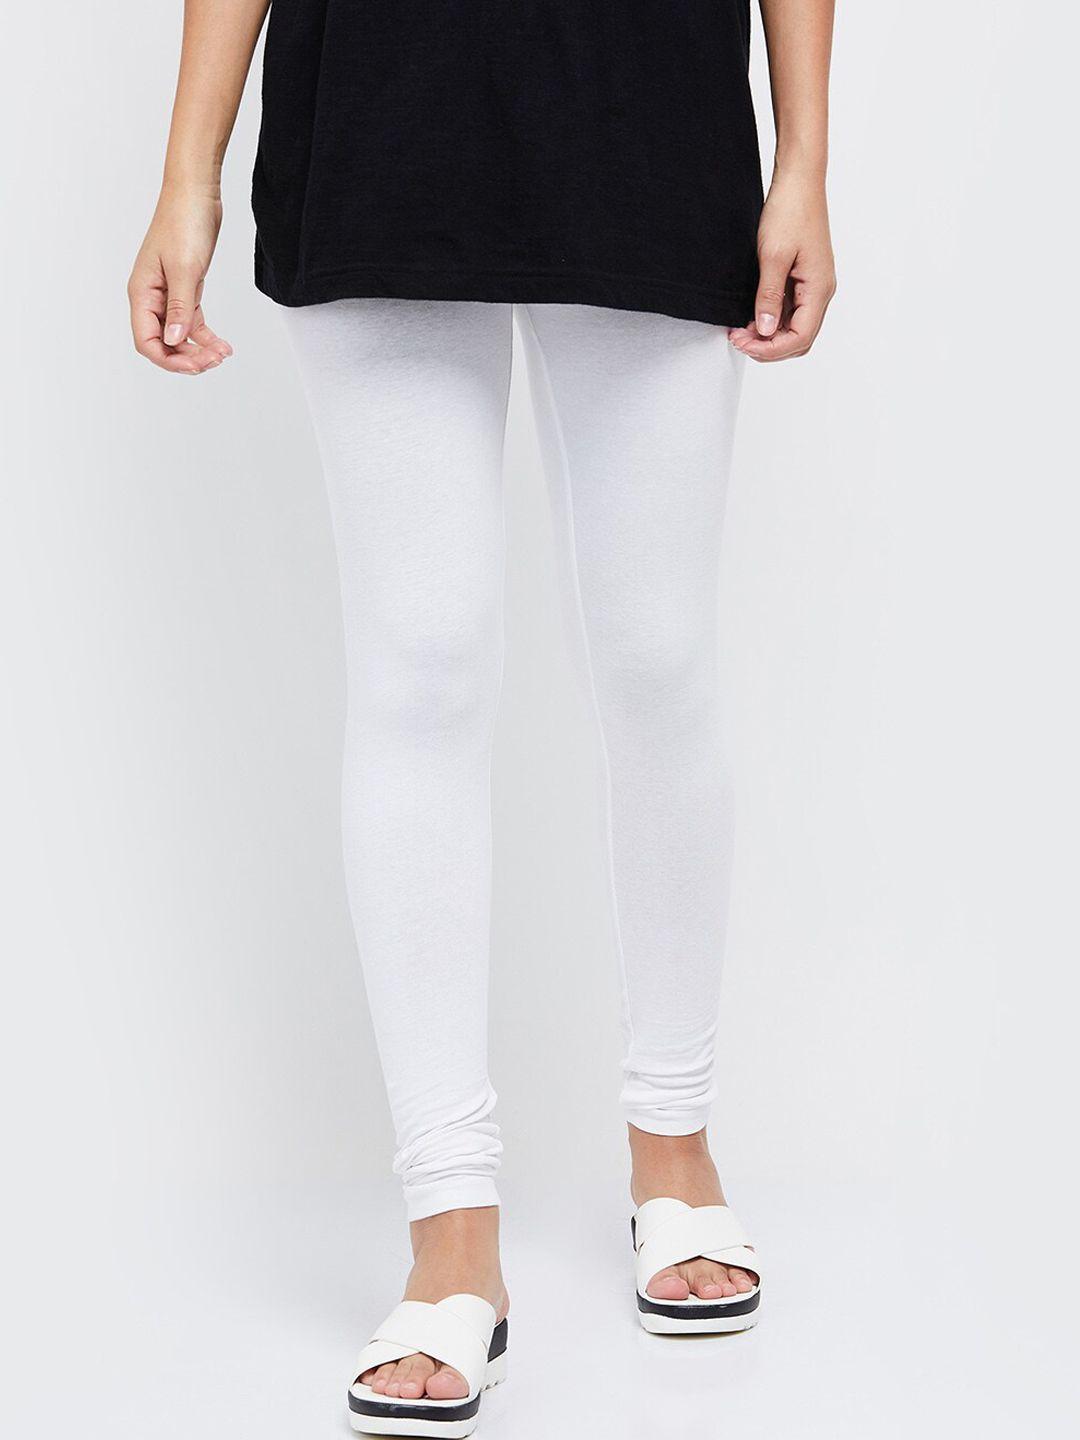 max women white solid churidar-length leggings